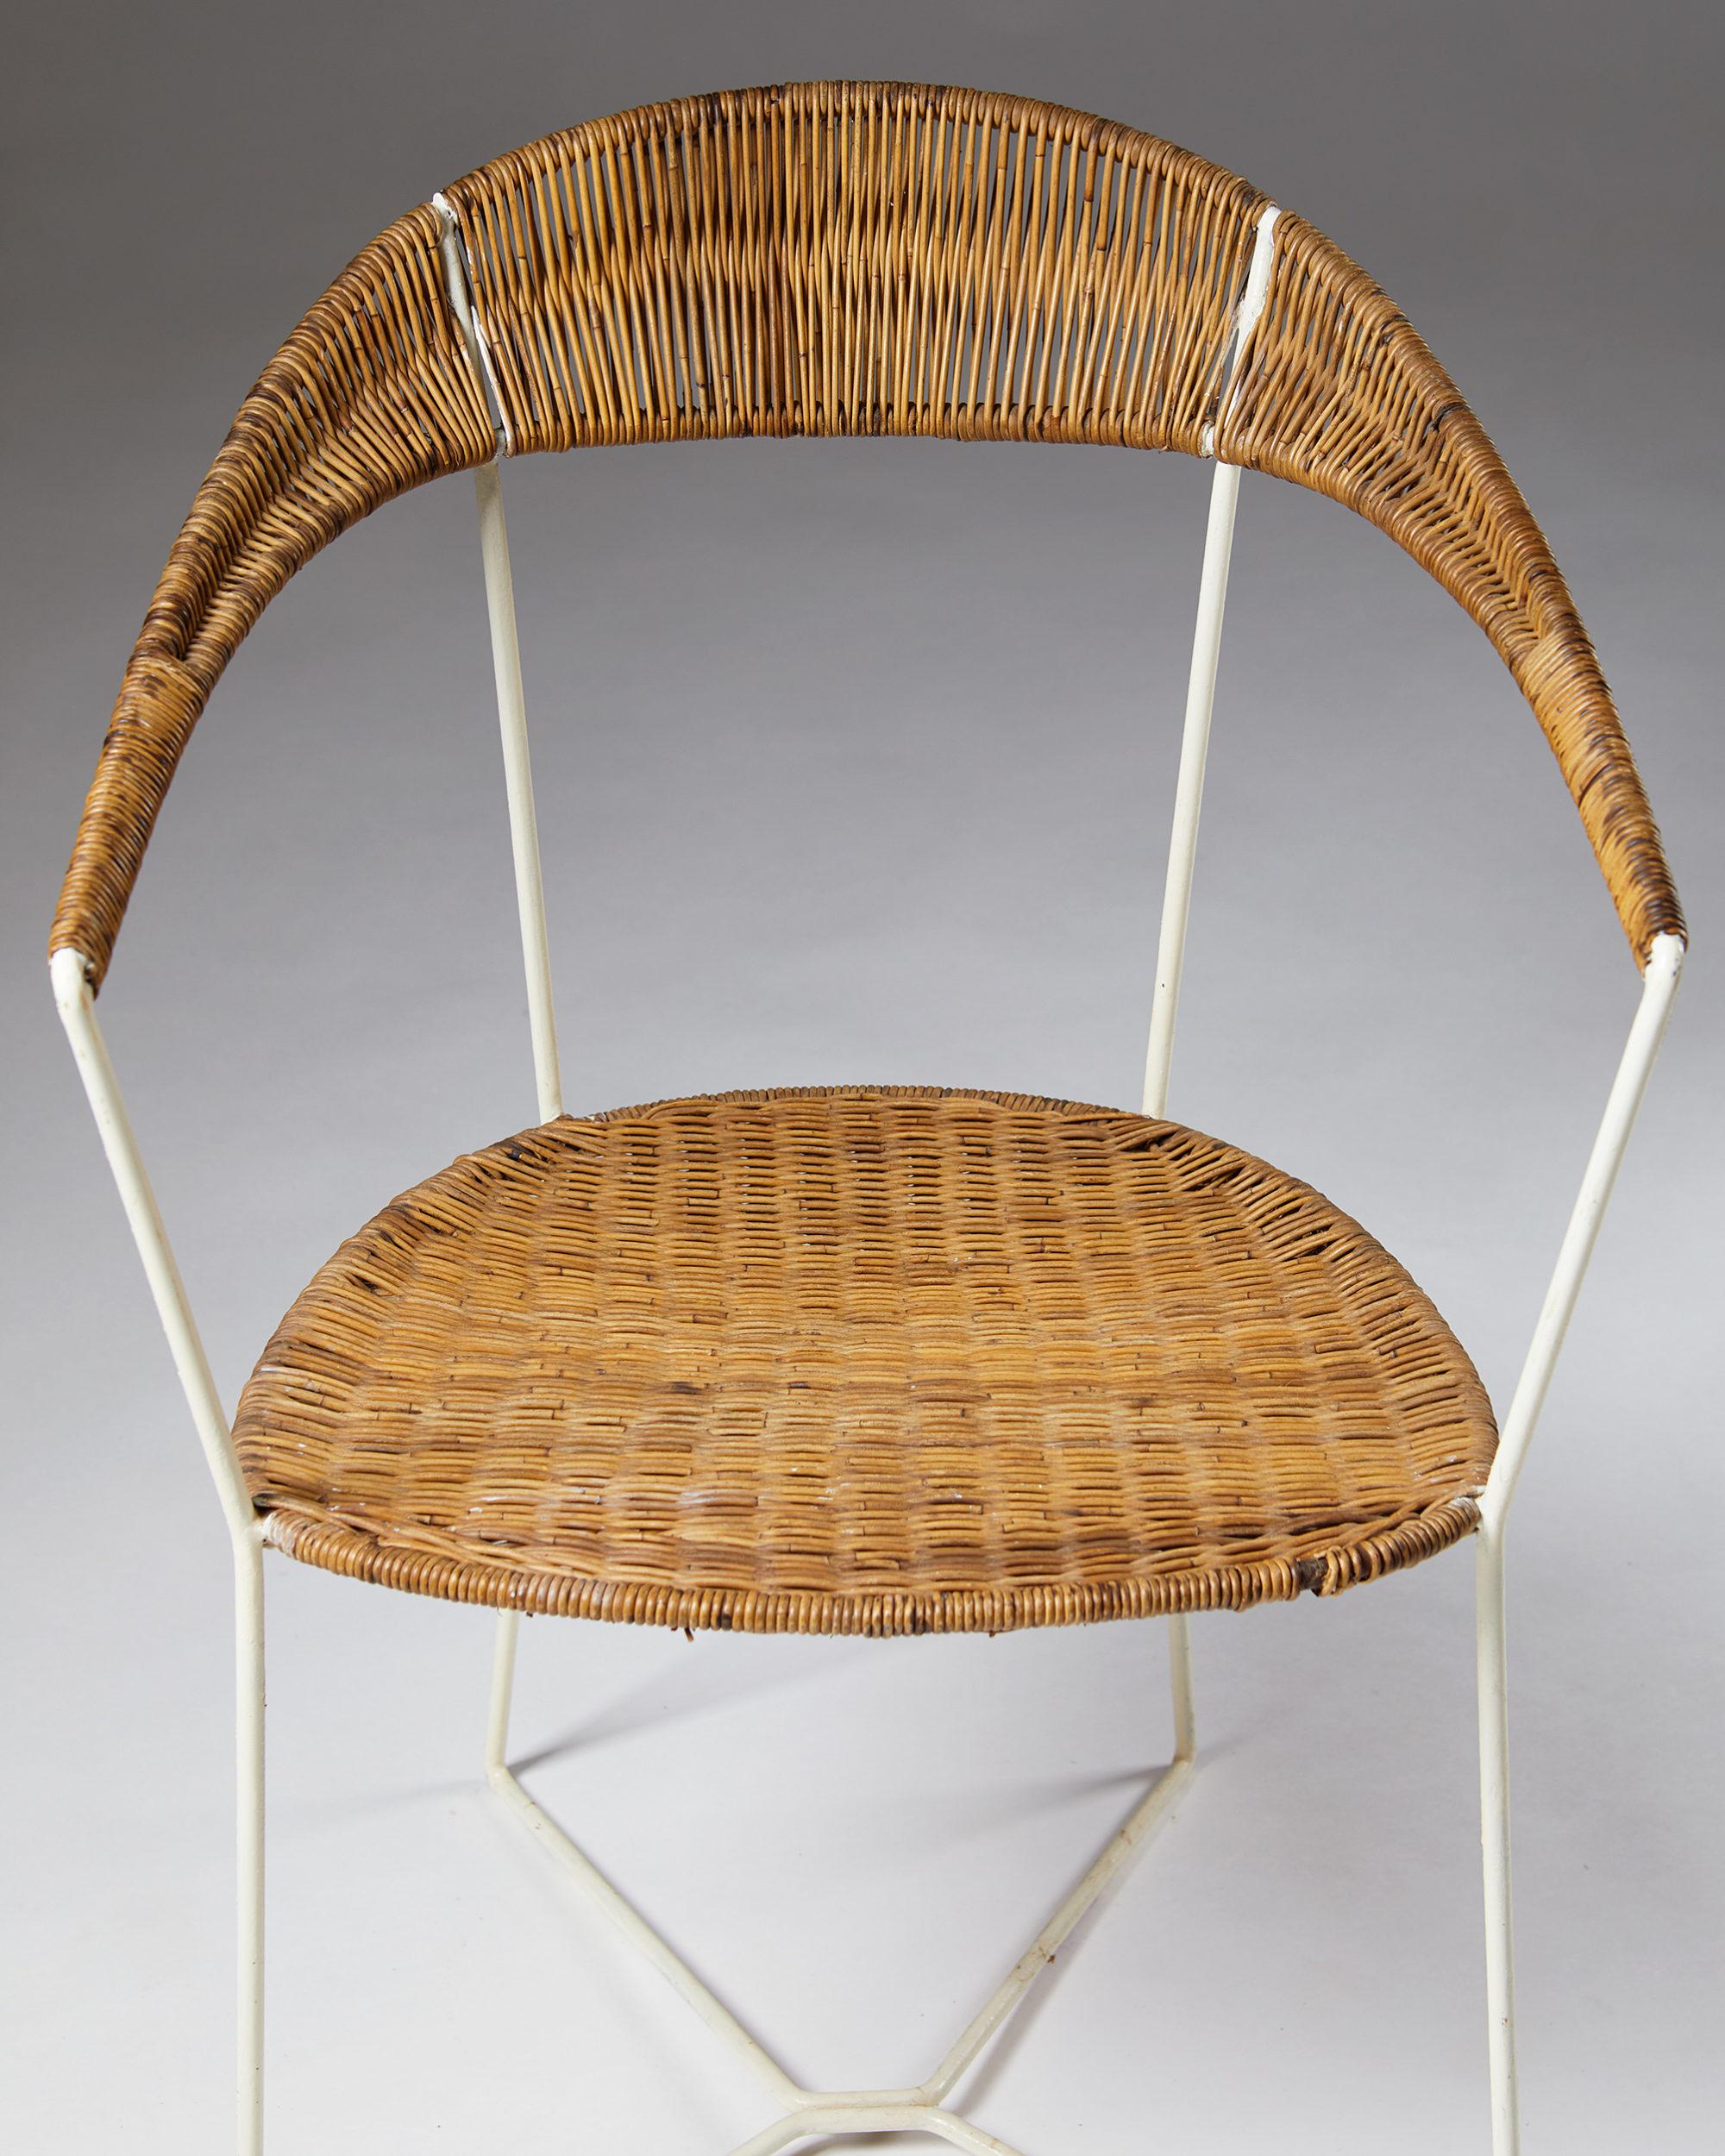 Hand-Woven Armchair designed by Ivar Callmander, Sweden, 1920s